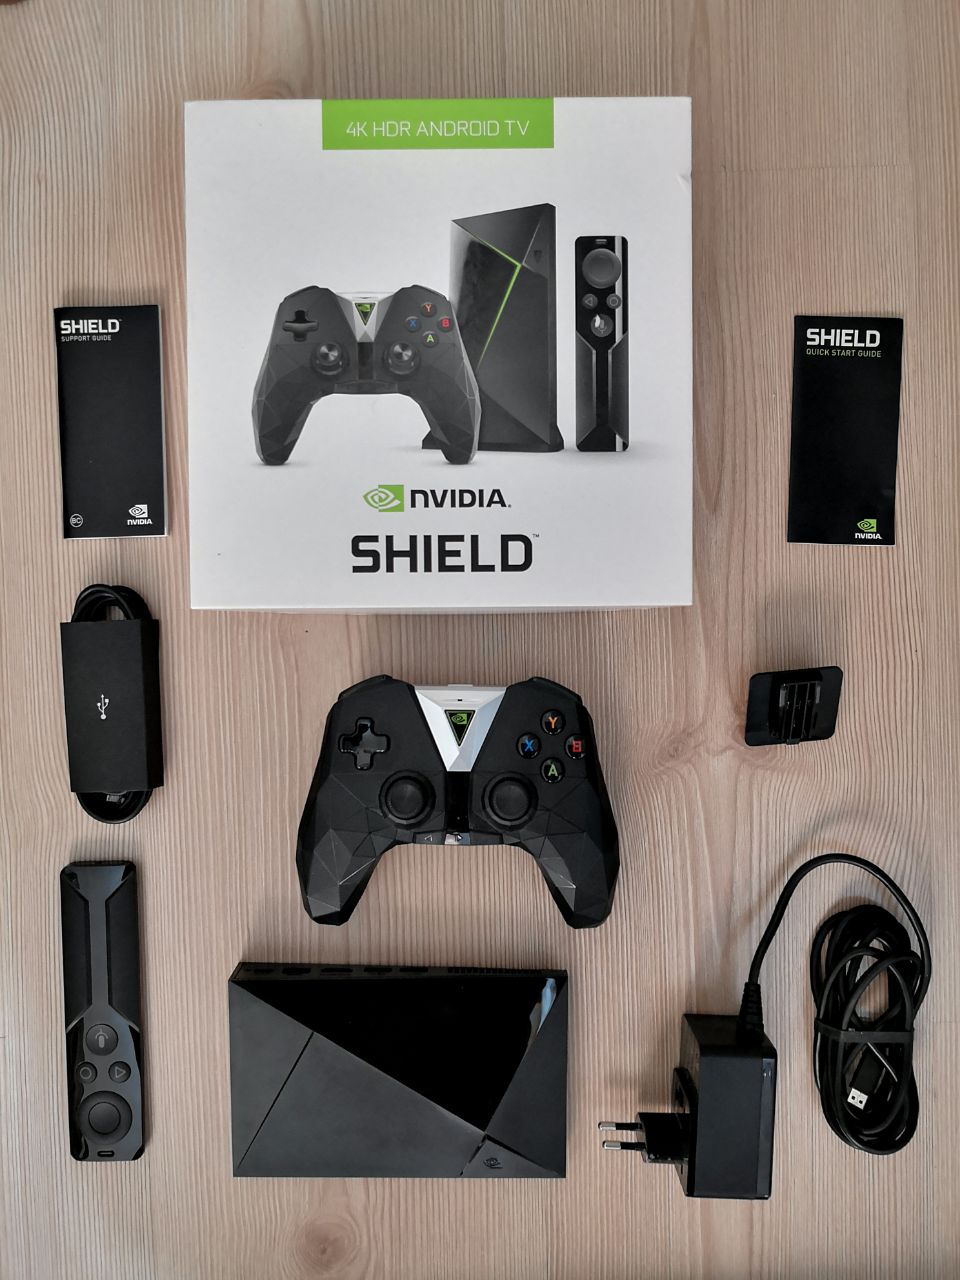 nvidia shield 2017 flirc setup with harmony